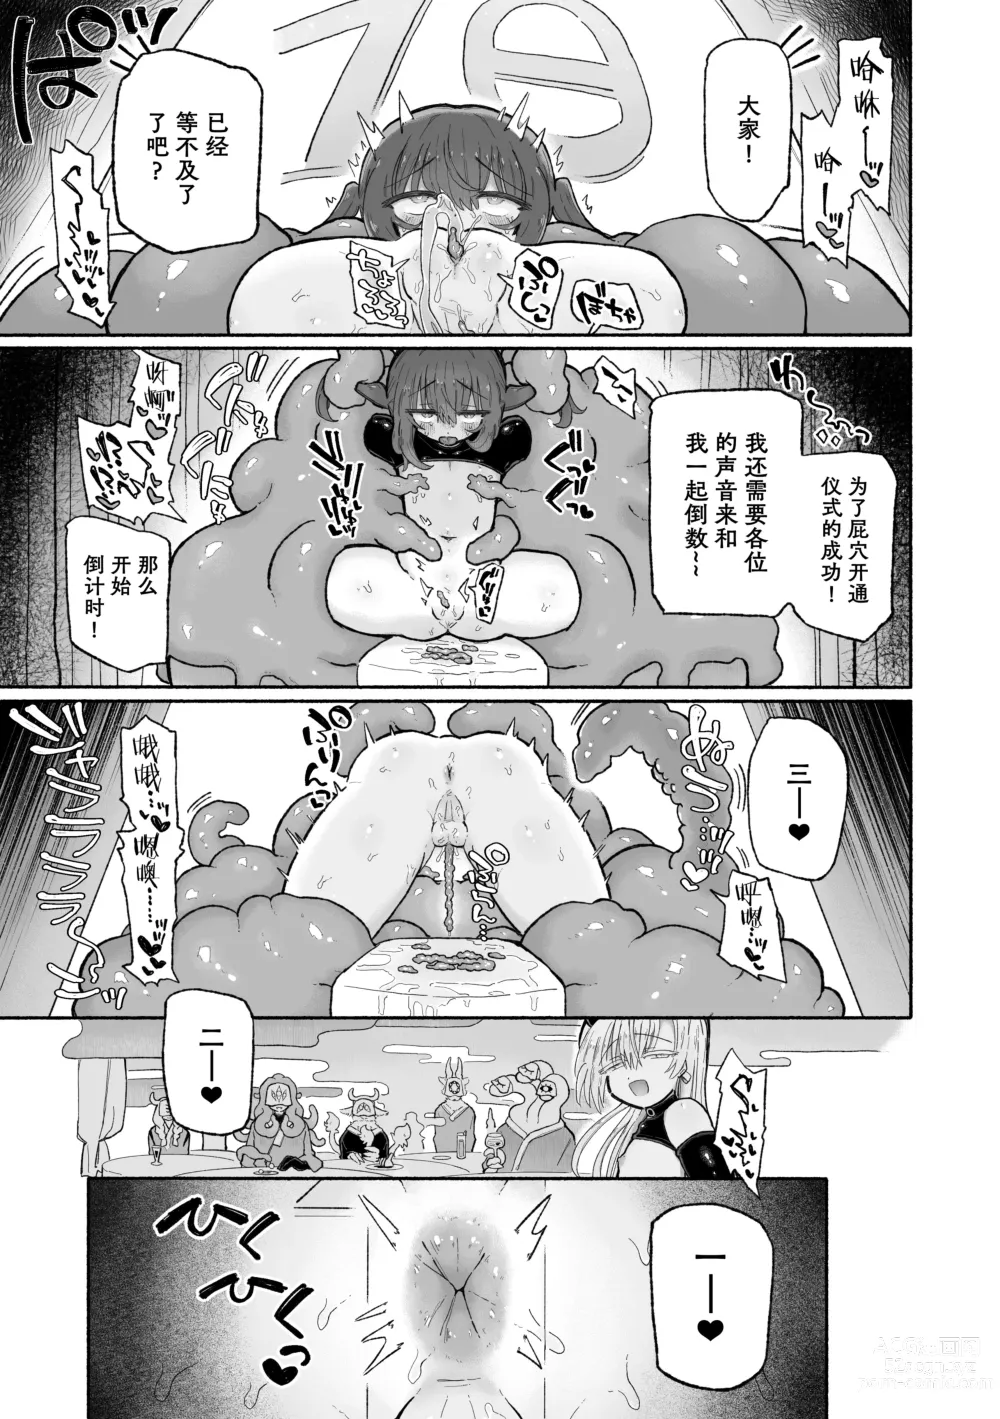 Page 42 of doujinshi Do hamari chui no kyosei danjon! 〜Mugen shasei no kairaku jigoku e yokoso〜